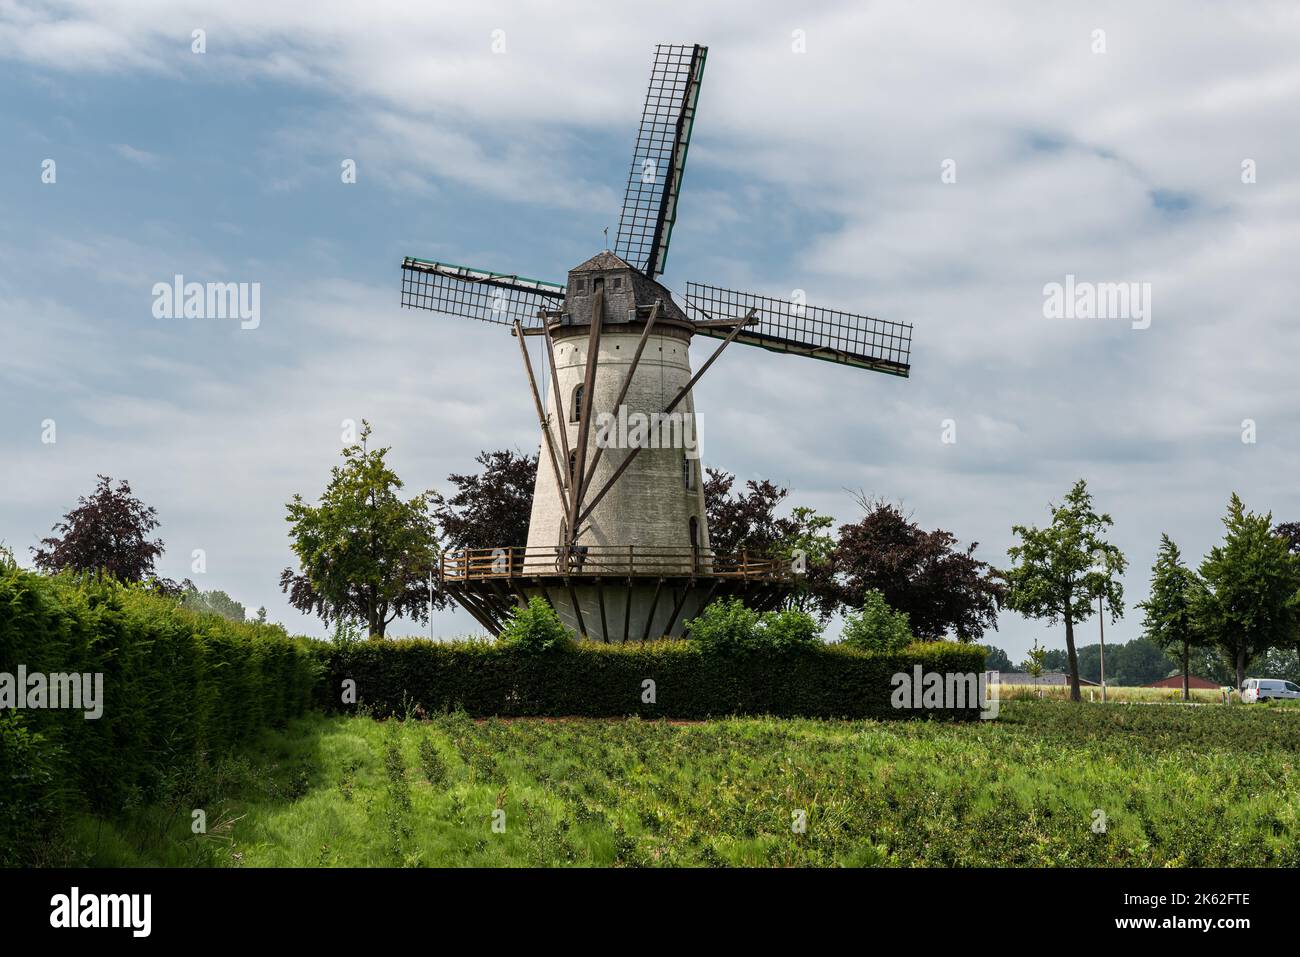 Wetteren, région de Flandre orientale, Belgique - 07 15 2021 moulin à vent traditionnel belge dans les champs Banque D'Images